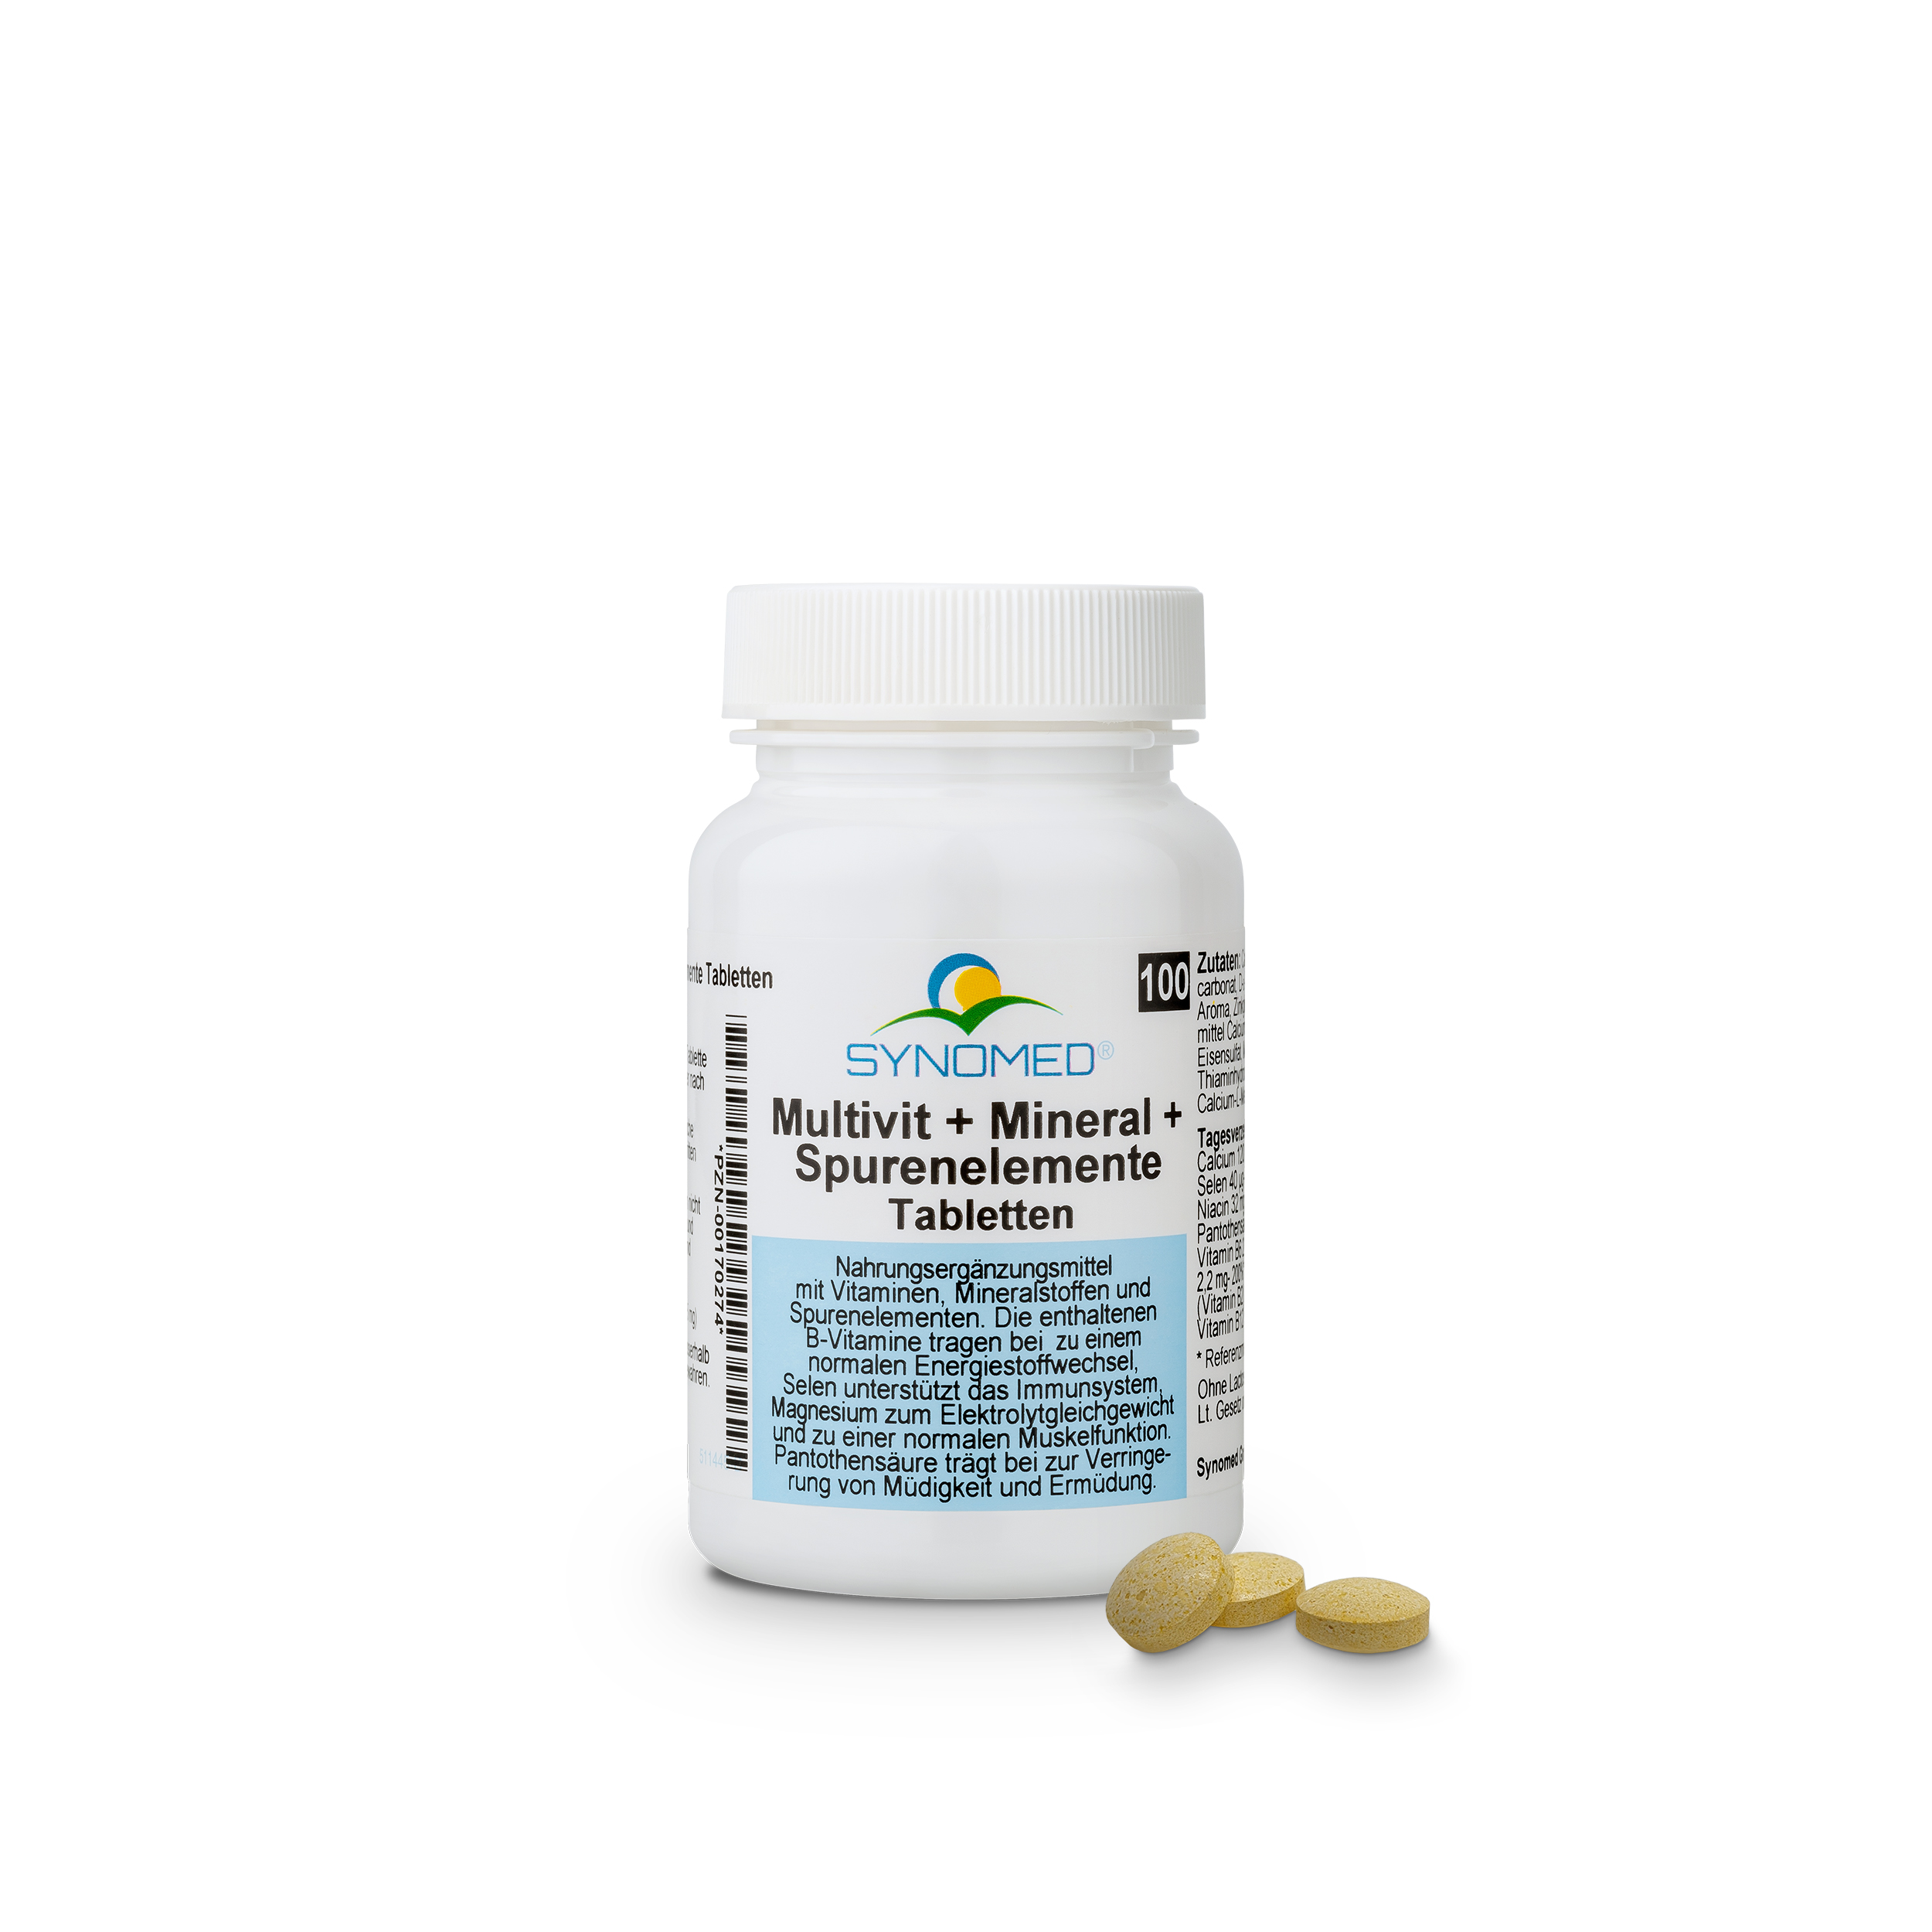 Multivit+Mineral+Spurenelemente Tabletten